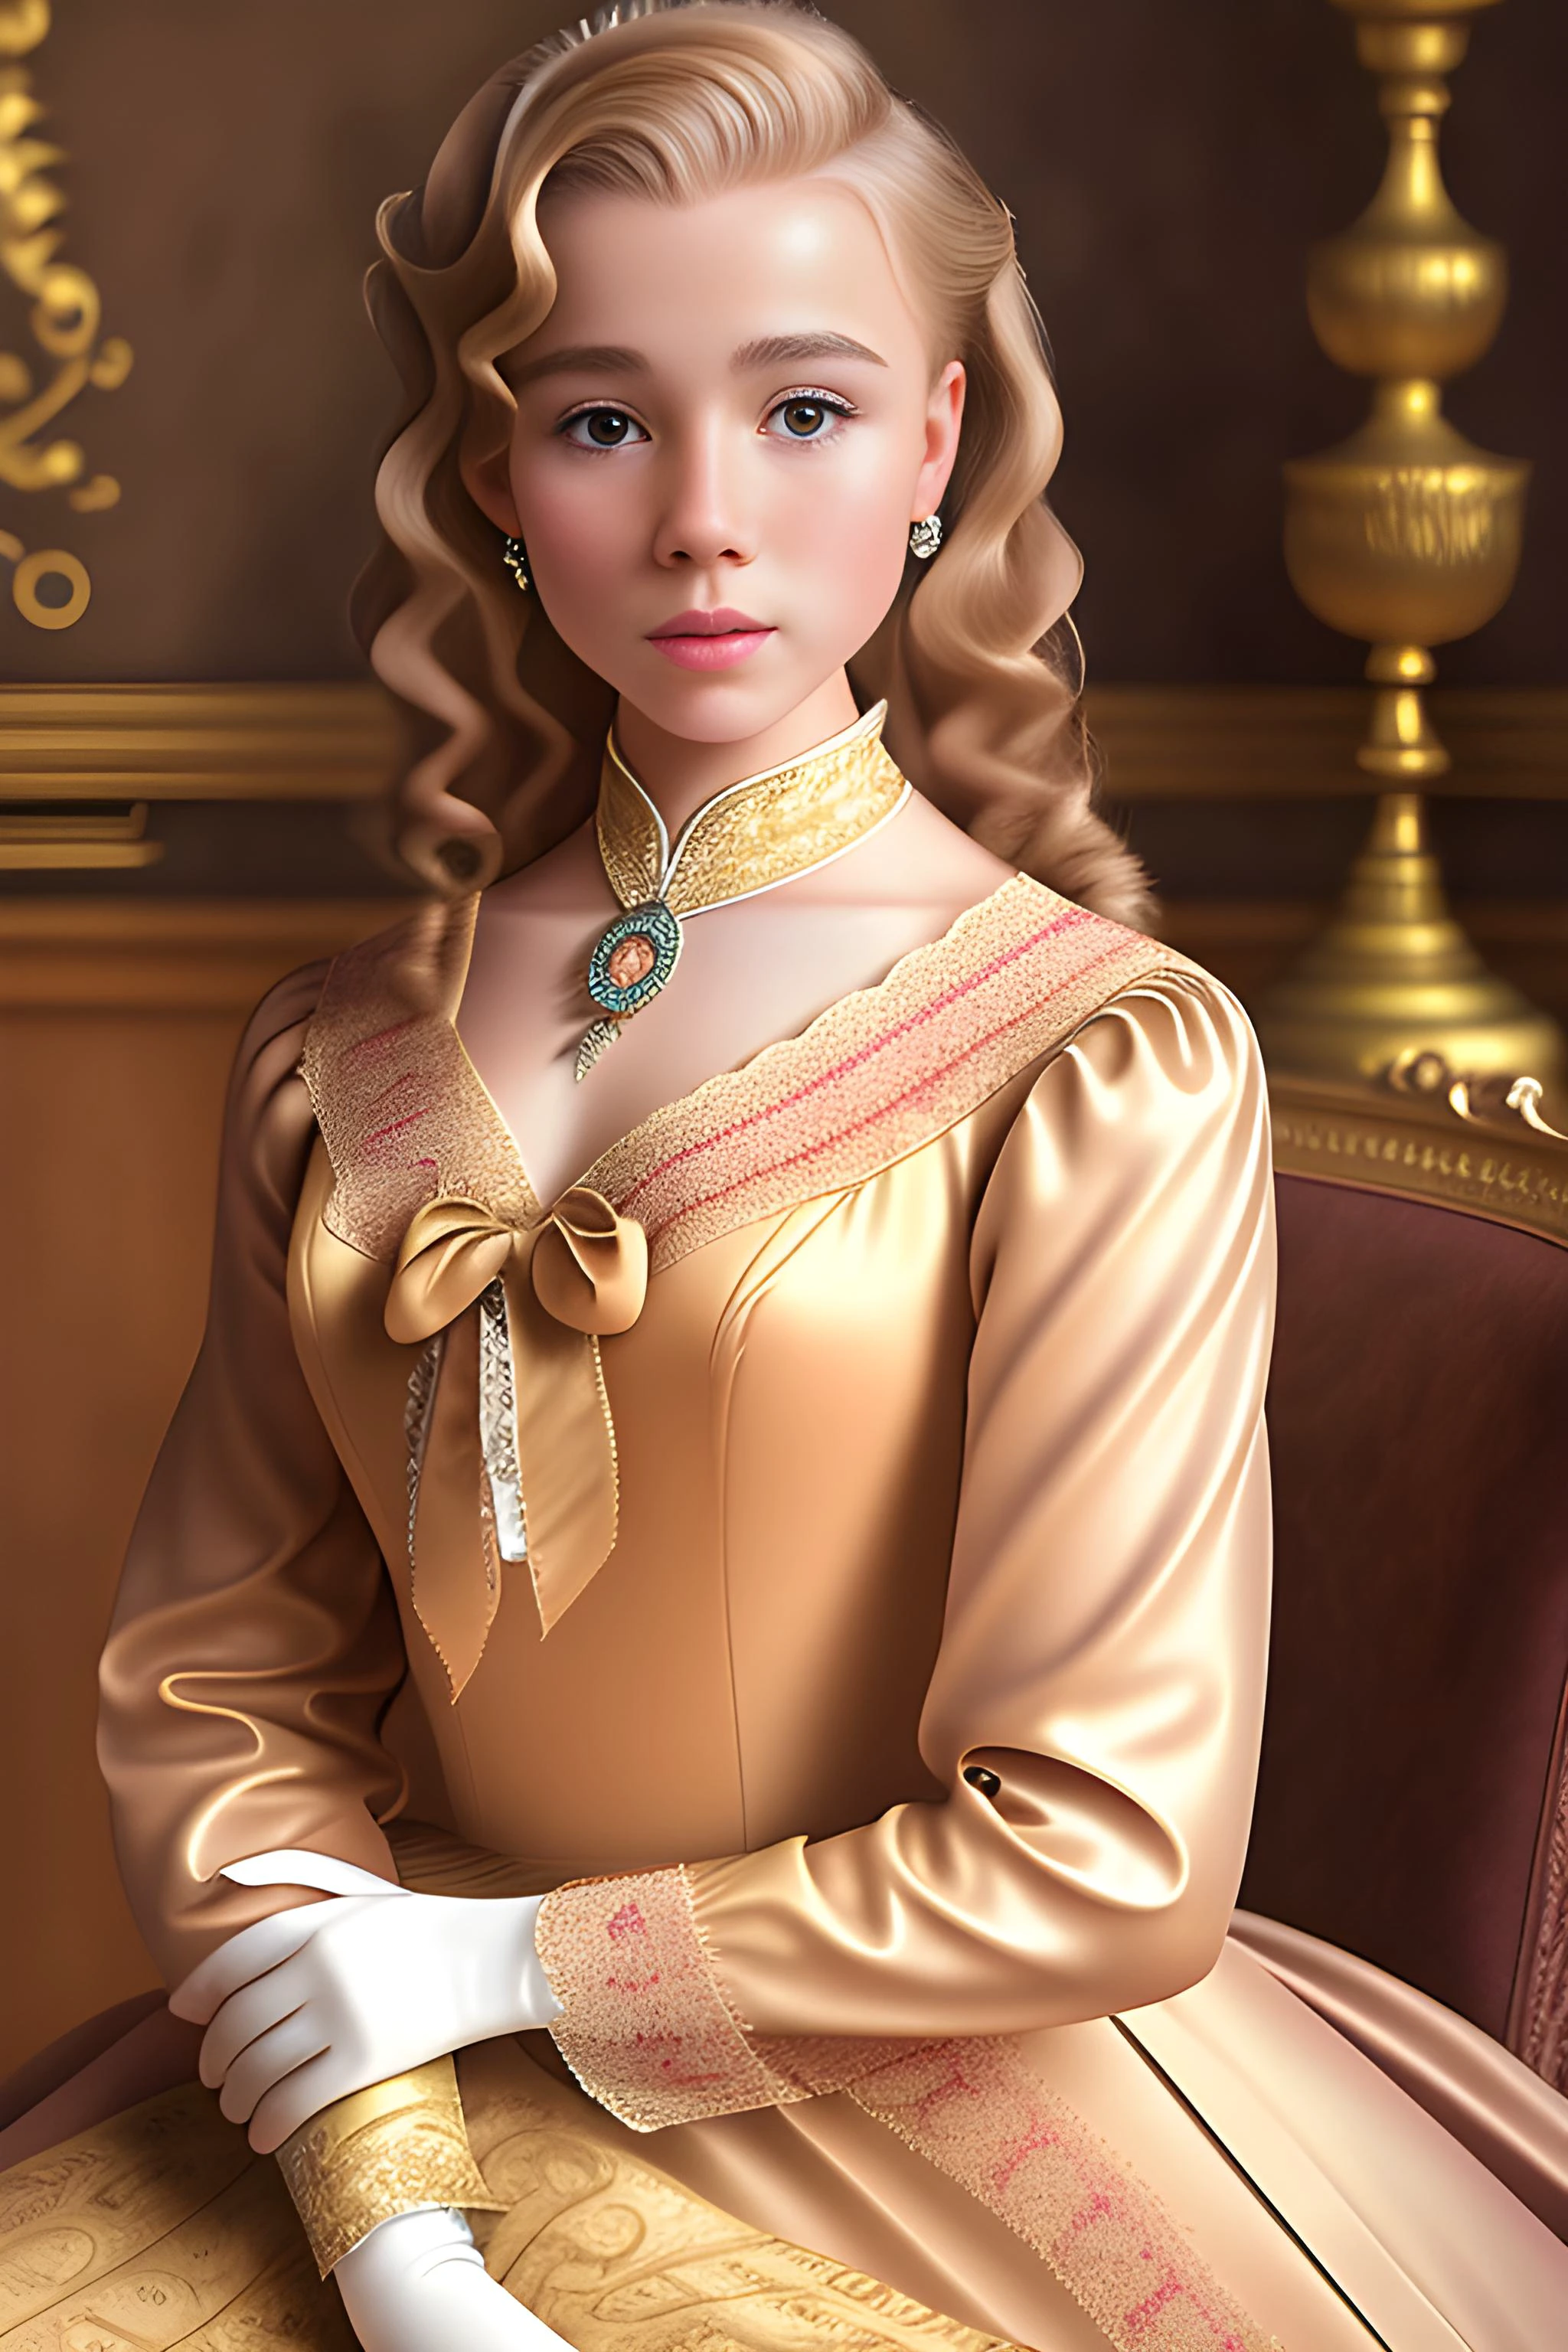 1950 年代の美しい高級アメリカ人貴族の少女の詳細なリアルな肖像画。カールした赤褐色の長いブロンドの髪を持ち、貴族の家のフォーマルな部屋に座っている。, 受賞歴のあるCGI